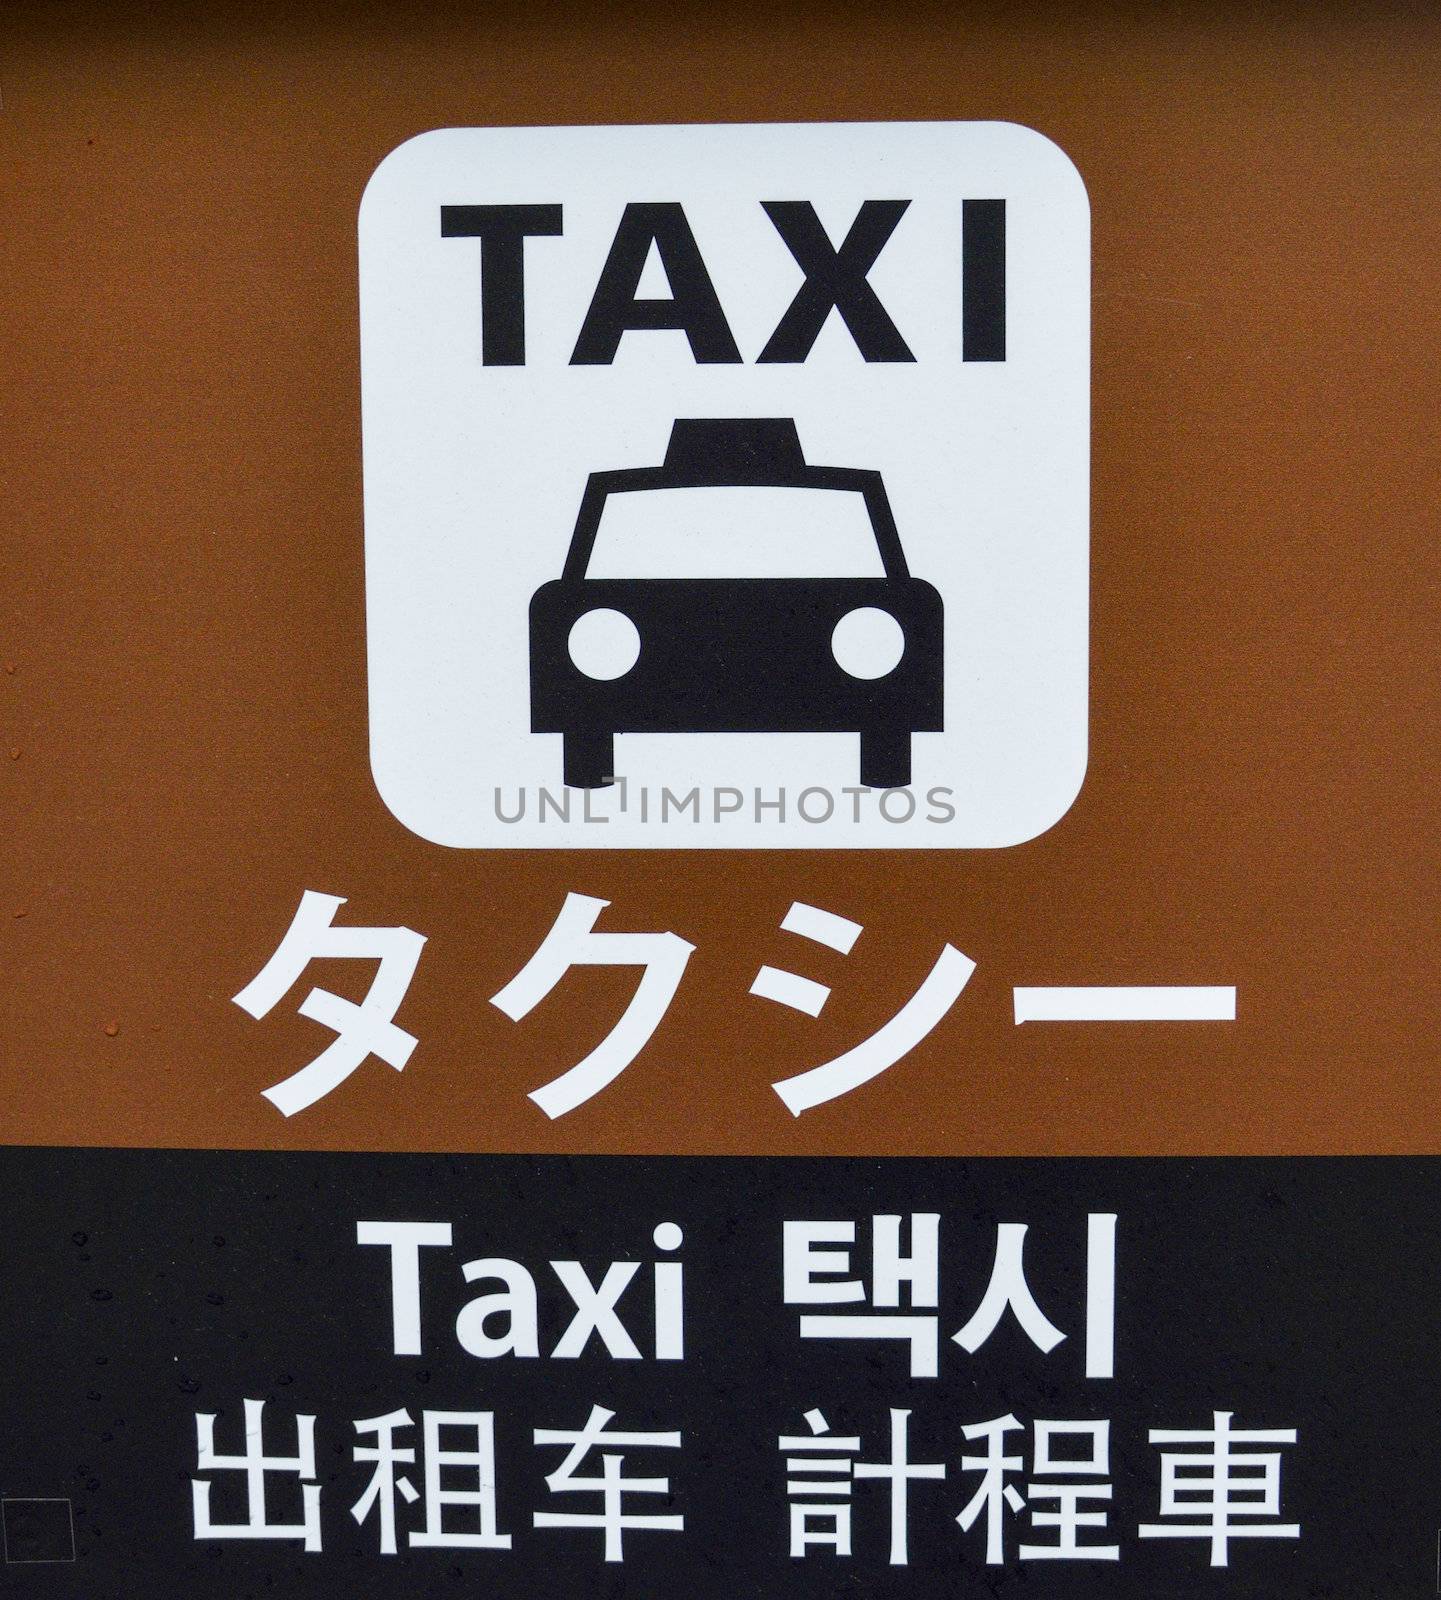 Taxi stop sign in Japan by gjeerawut